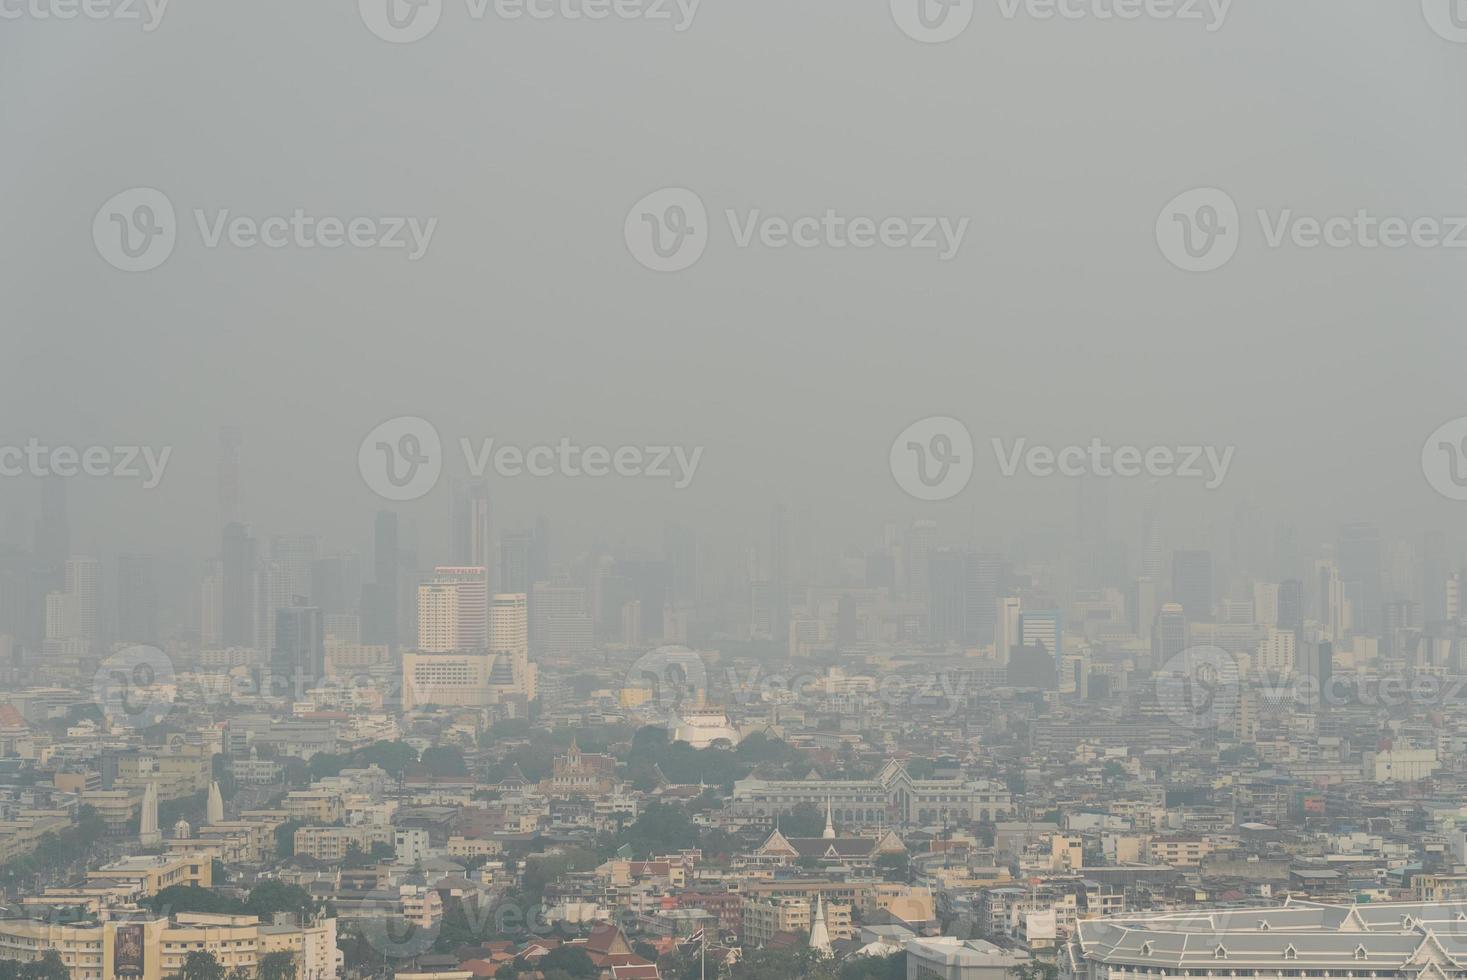 ar poluição e PM 2,5 acima perigoso nível dentro Bangkok Tailândia foto